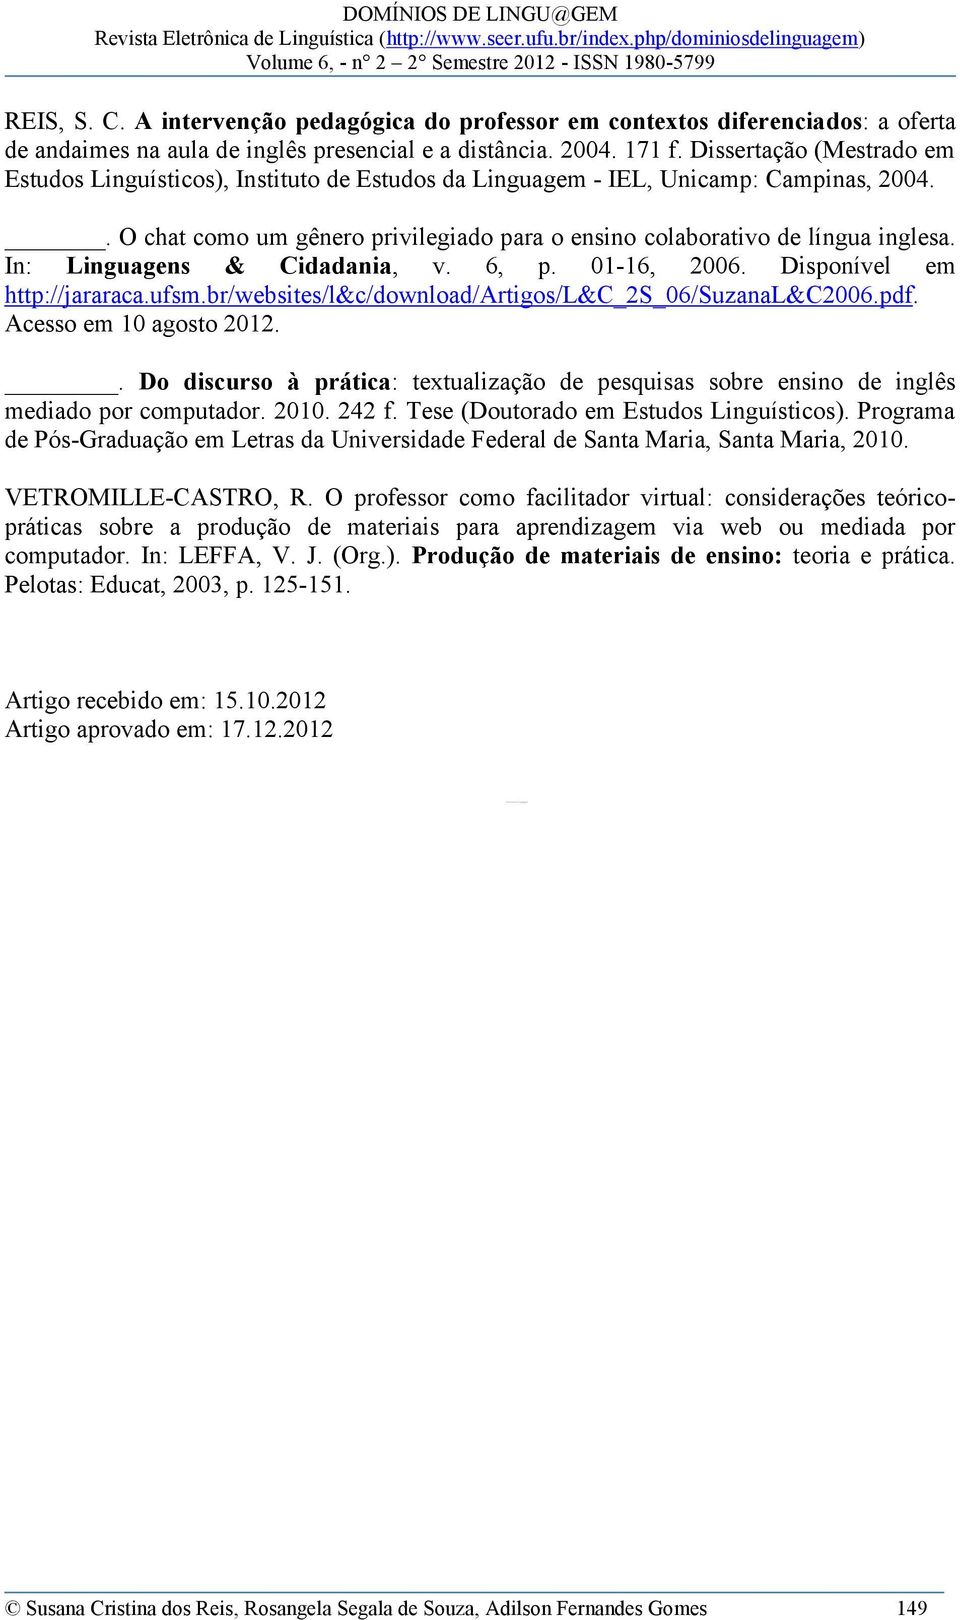 In: Linguagens & Cidadania, v. 6, p. 01-16, 2006. Disponível em http://jararaca.ufsm.br/websites/l&c/download/artigos/l&c_2s_06/suzanal&c2006.pdf. Acesso em 10 agosto 2012.